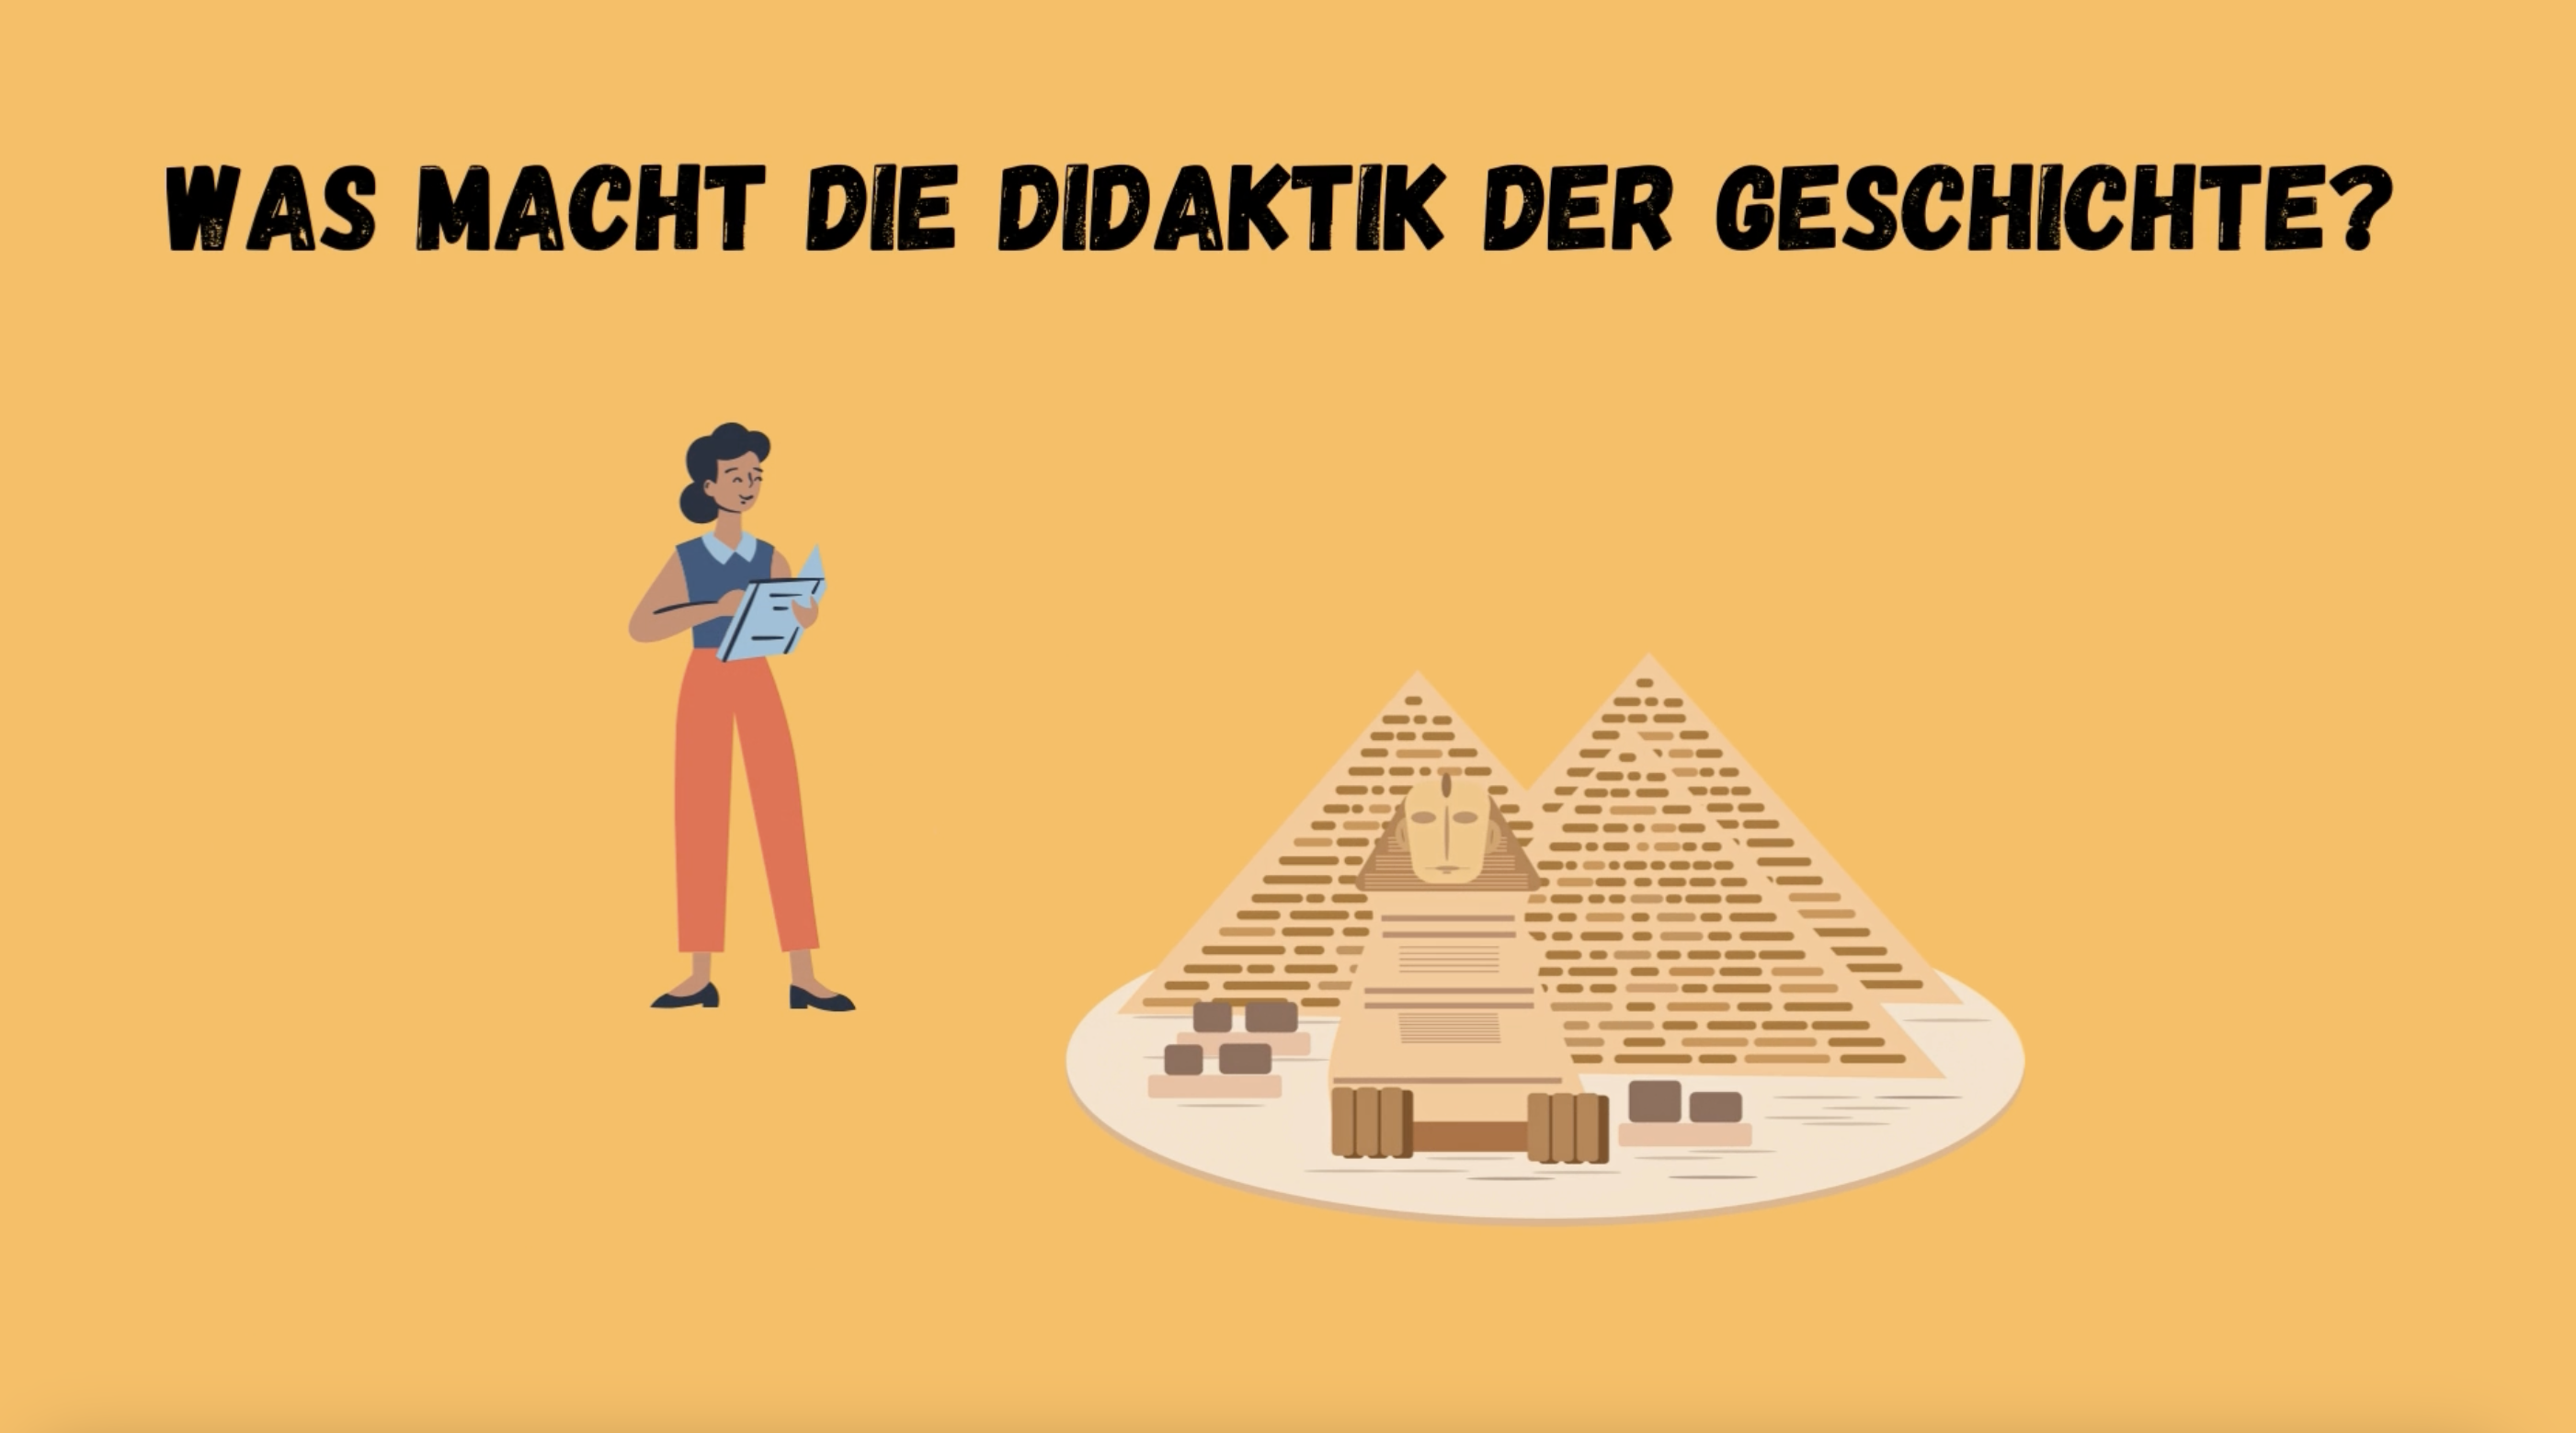 Bildausschnitt des Erklärvideos "Was macht die Didaktik der Geschichte?", erstellt von Michael Boyko mit canva pro.